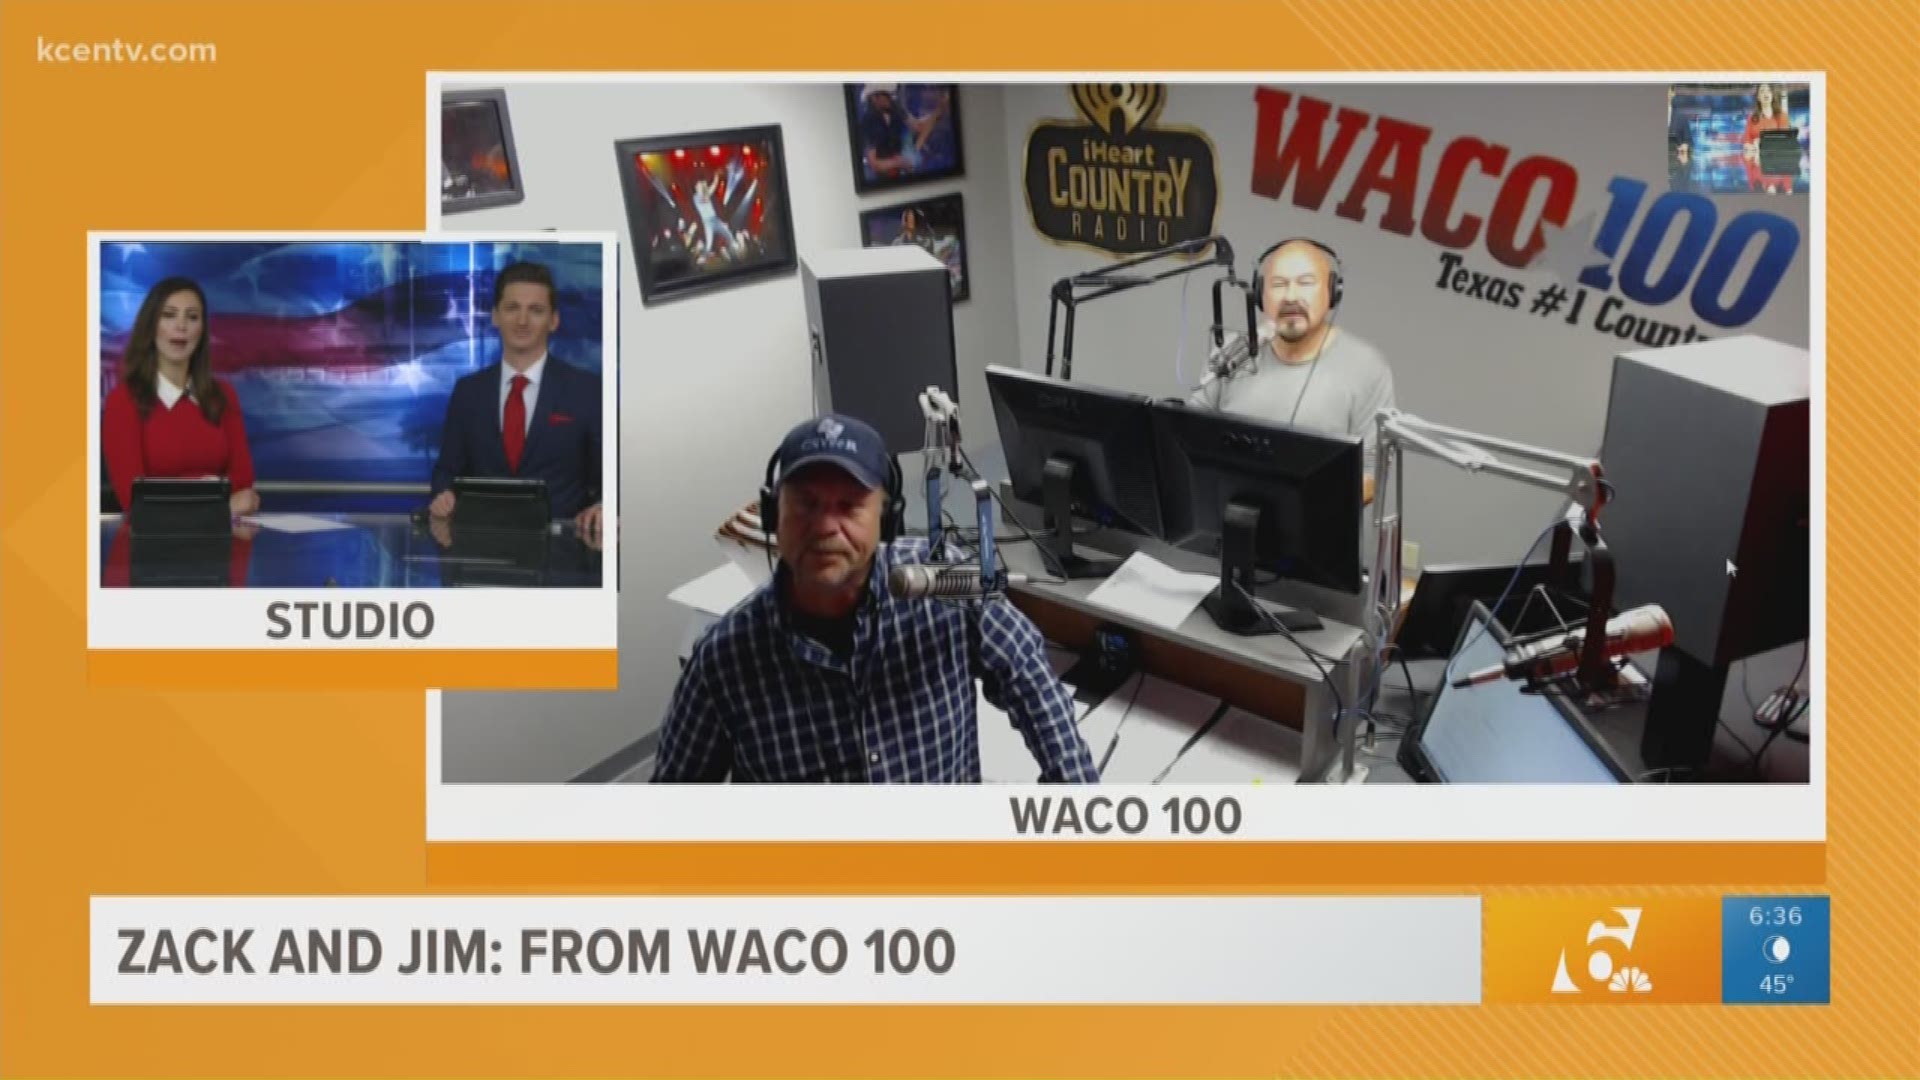 Live on Waco 100.